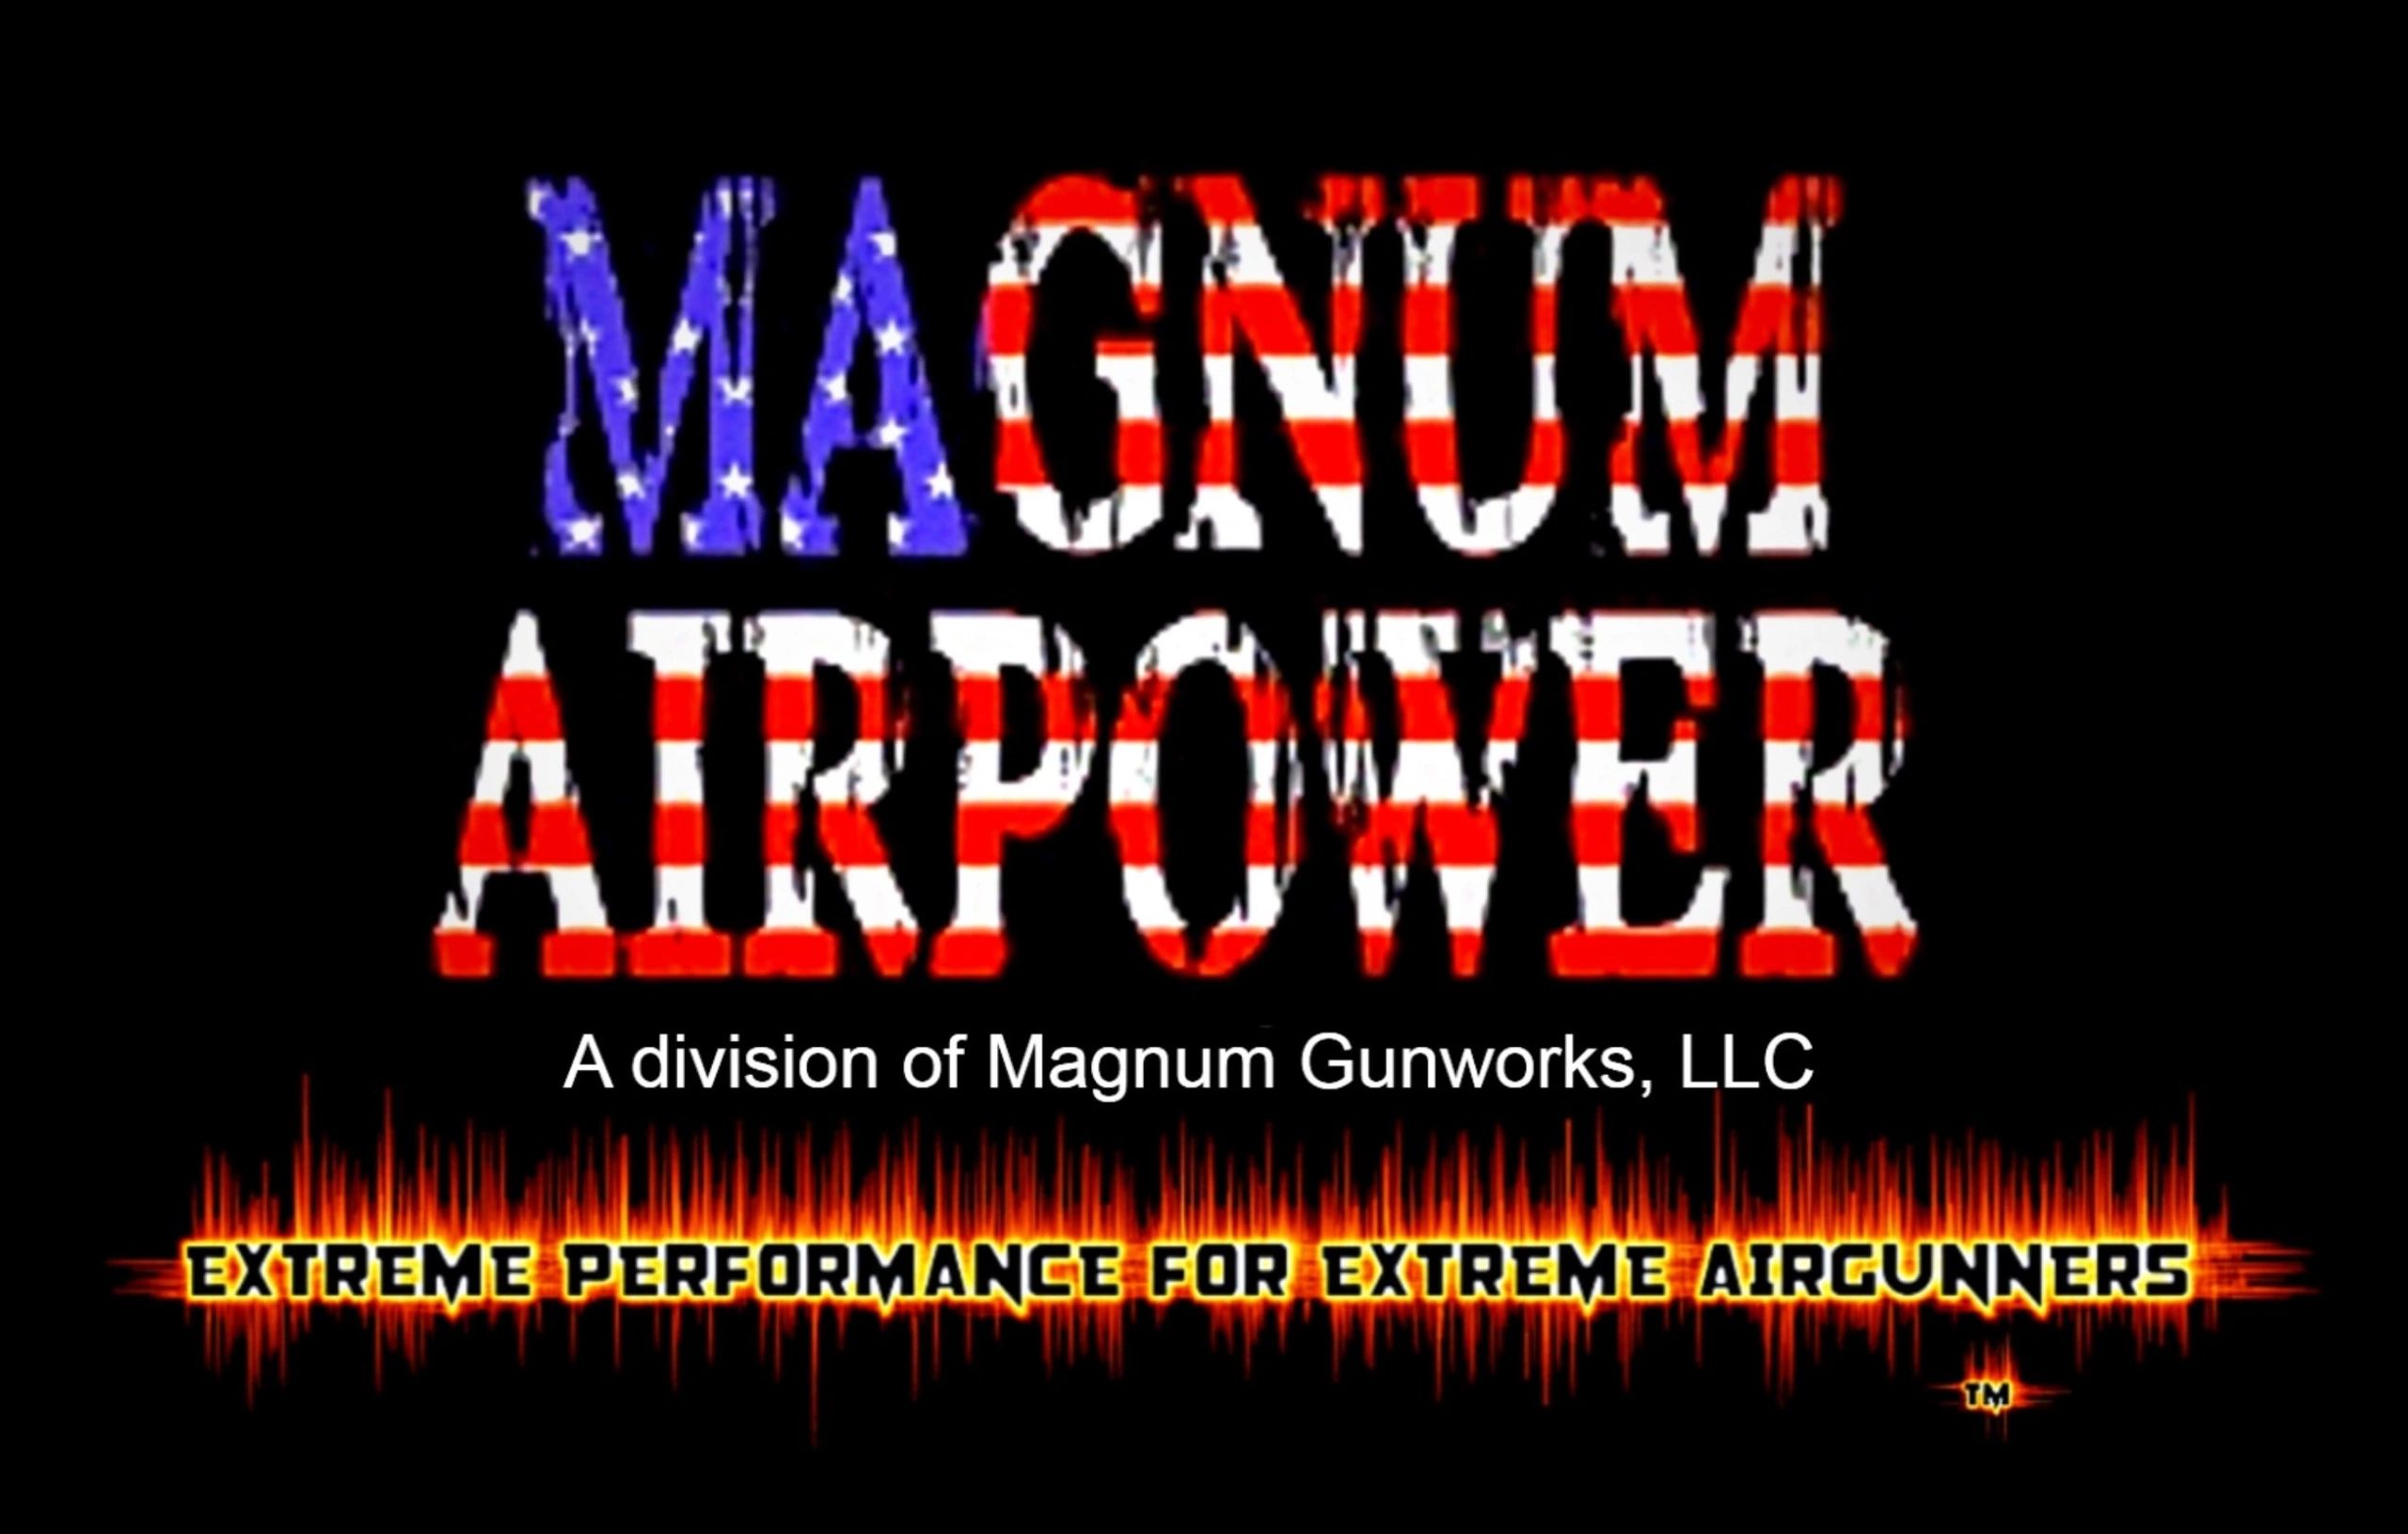 (c) Magnumairpower.com